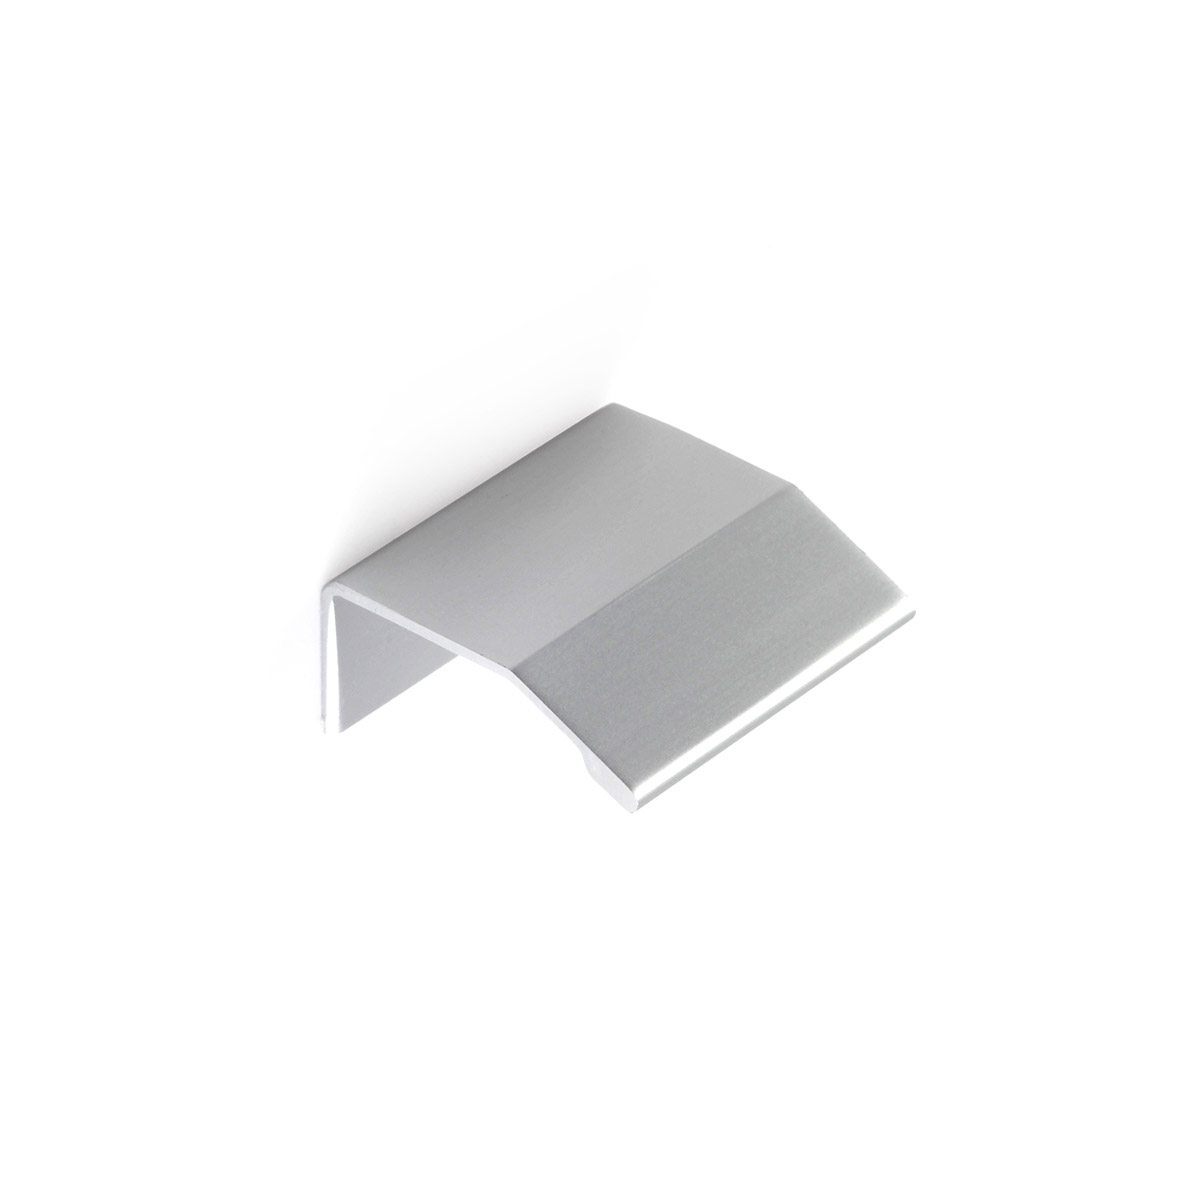 Poignée en aluminium avec finition anodisée mate, dimensions: 40x18x39mm et inserts: 16mm